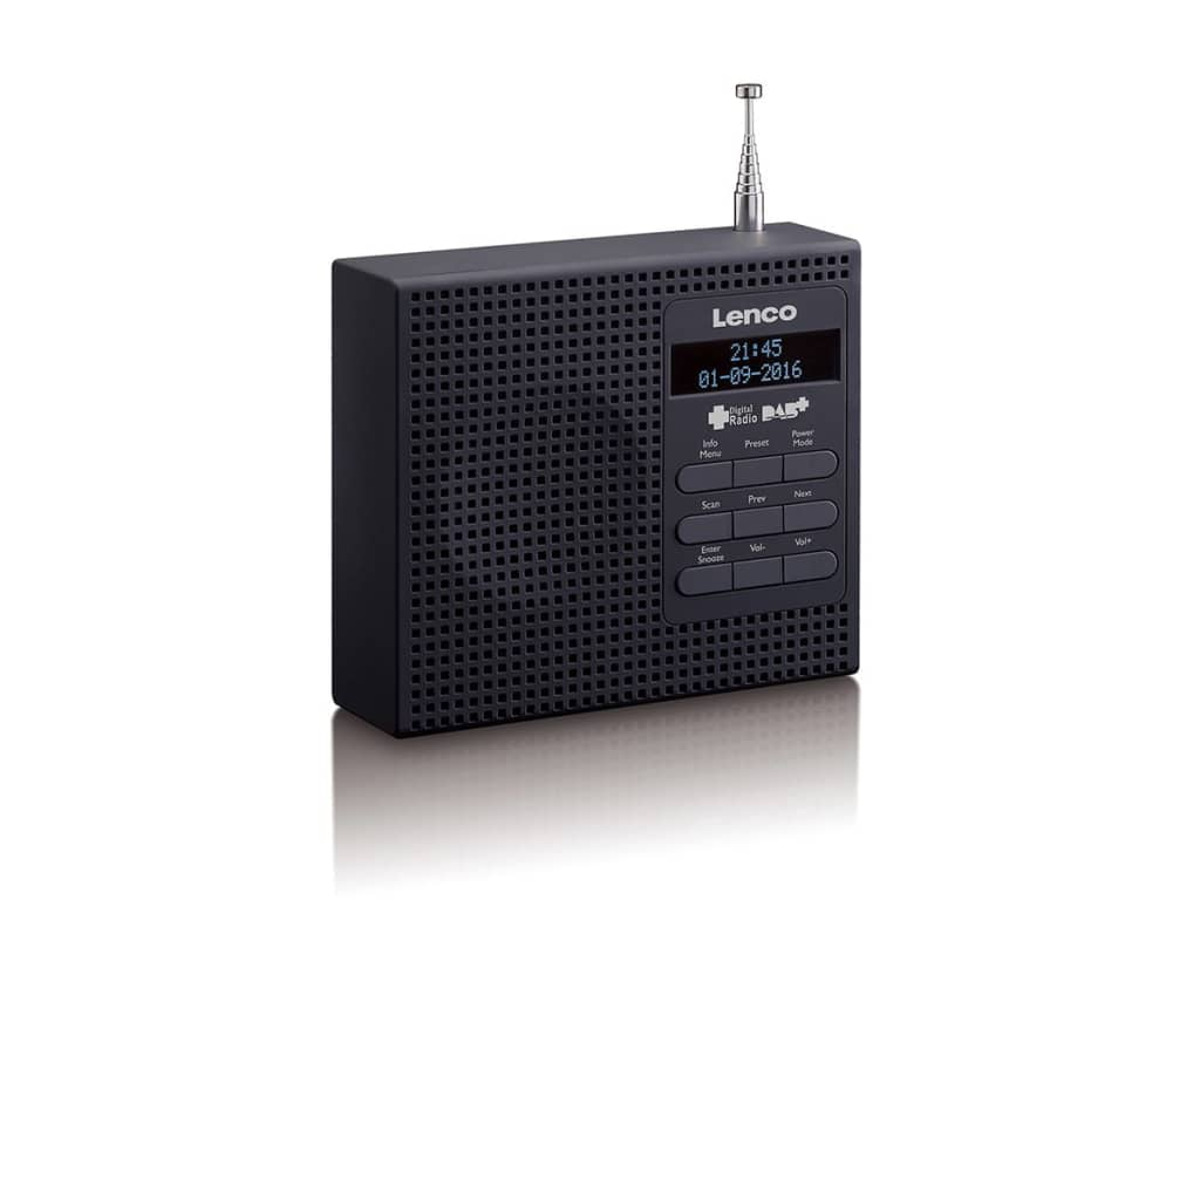 LENCO 410398 Uhrenradio, Bluetooth, Black DAB